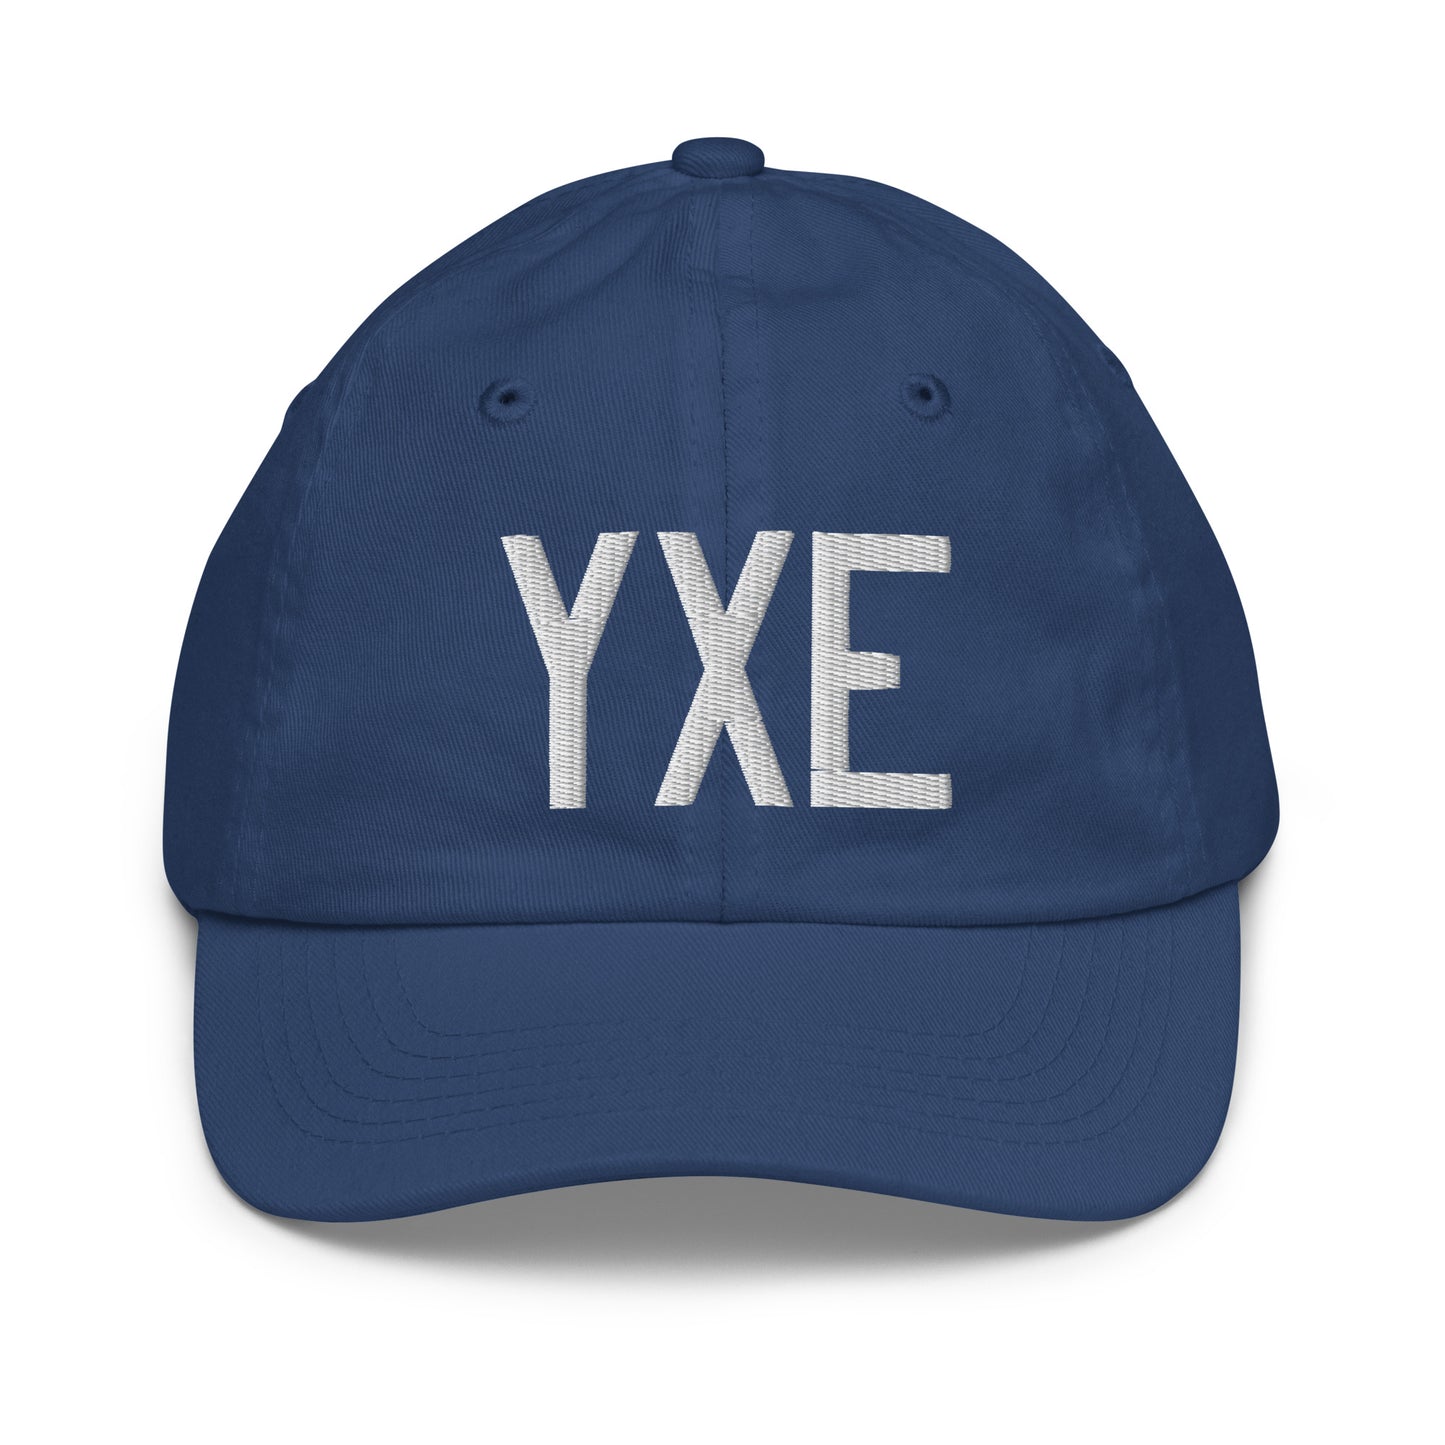 Airport Code Kid's Baseball Cap - White • YXE Saskatoon • YHM Designs - Image 20